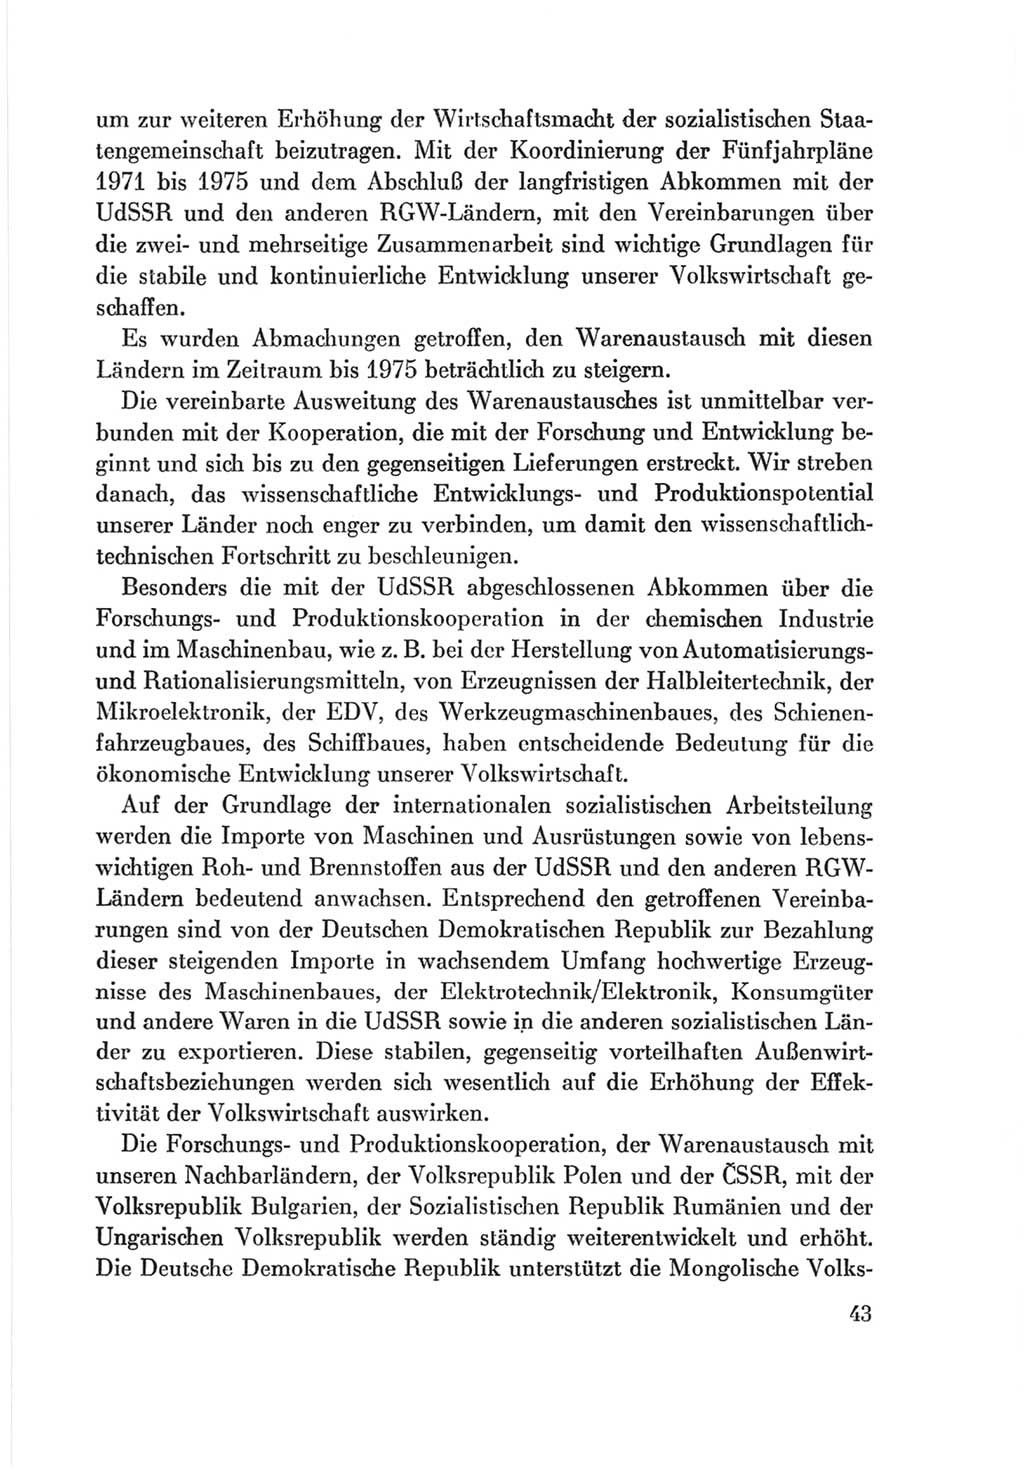 Protokoll der Verhandlungen des Ⅷ. Parteitages der Sozialistischen Einheitspartei Deutschlands (SED) [Deutsche Demokratische Republik (DDR)] 1971, Band 2, Seite 43 (Prot. Verh. Ⅷ. PT SED DDR 1971, Bd. 2, S. 43)